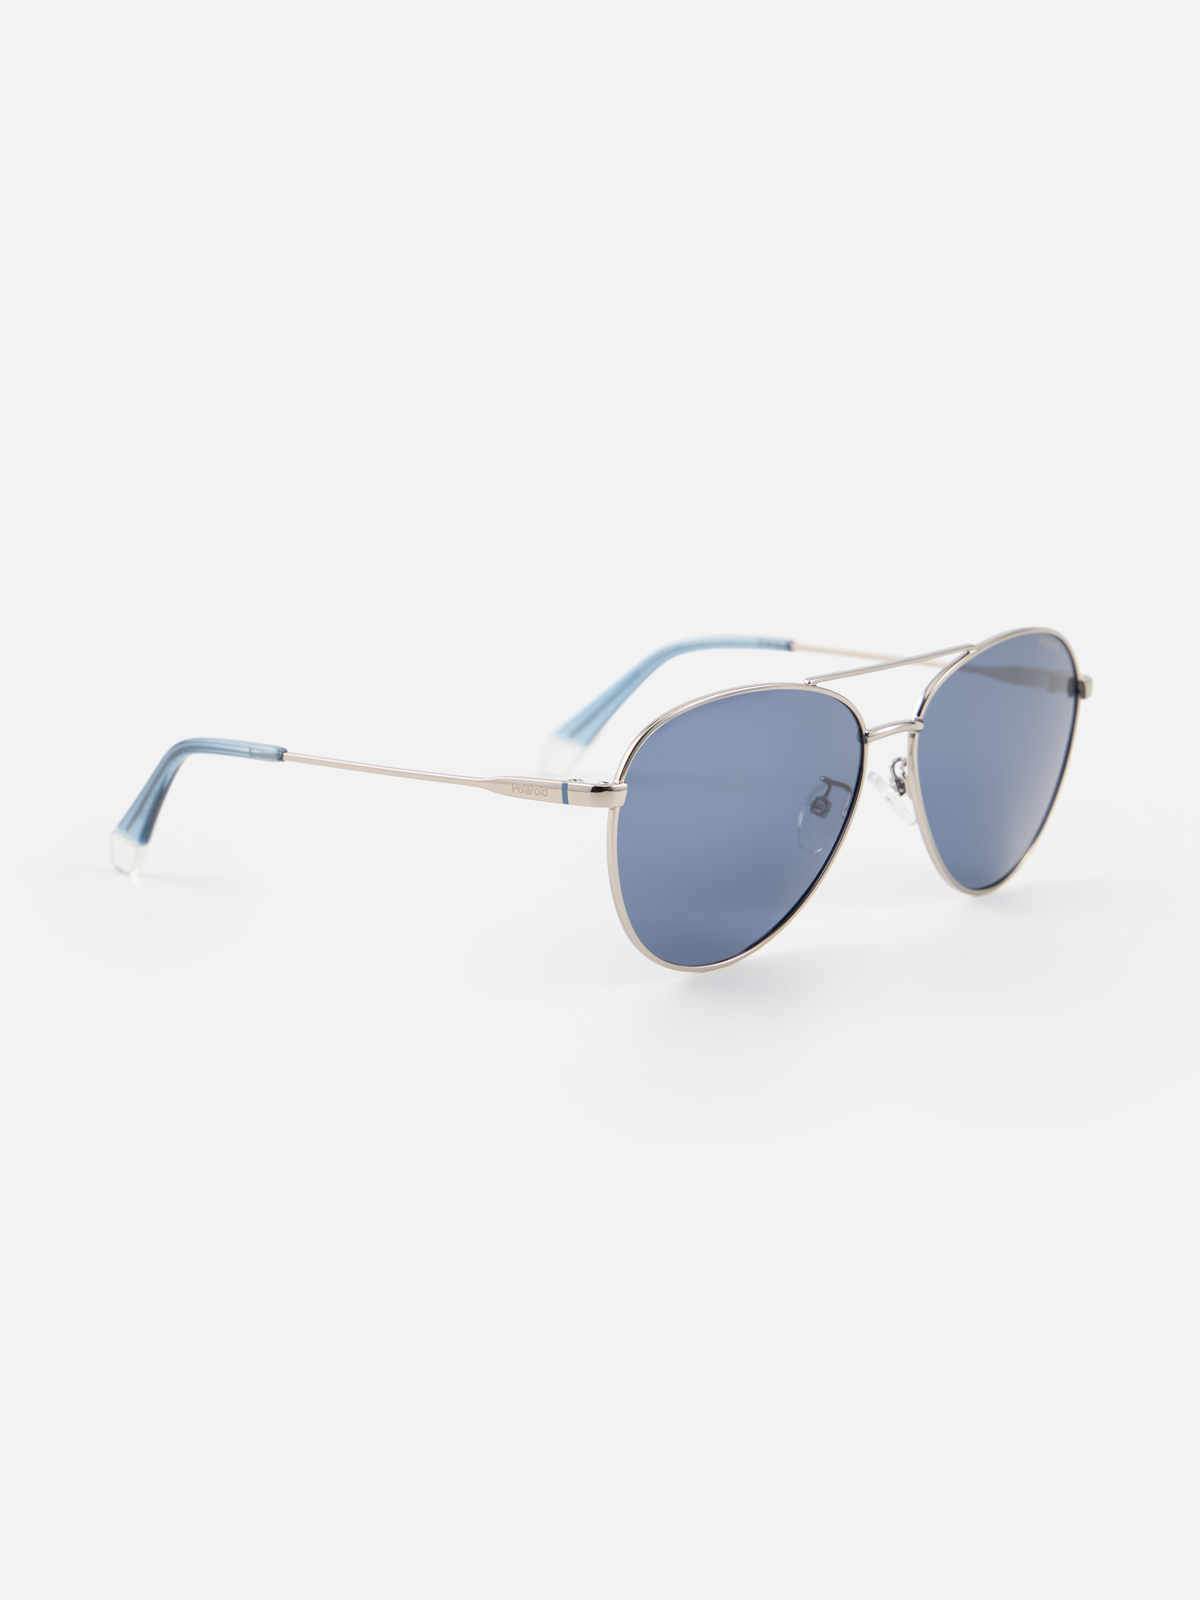 Солнцезащитные очки унисекс Polaroid Pld-2057106LB60C3 синие